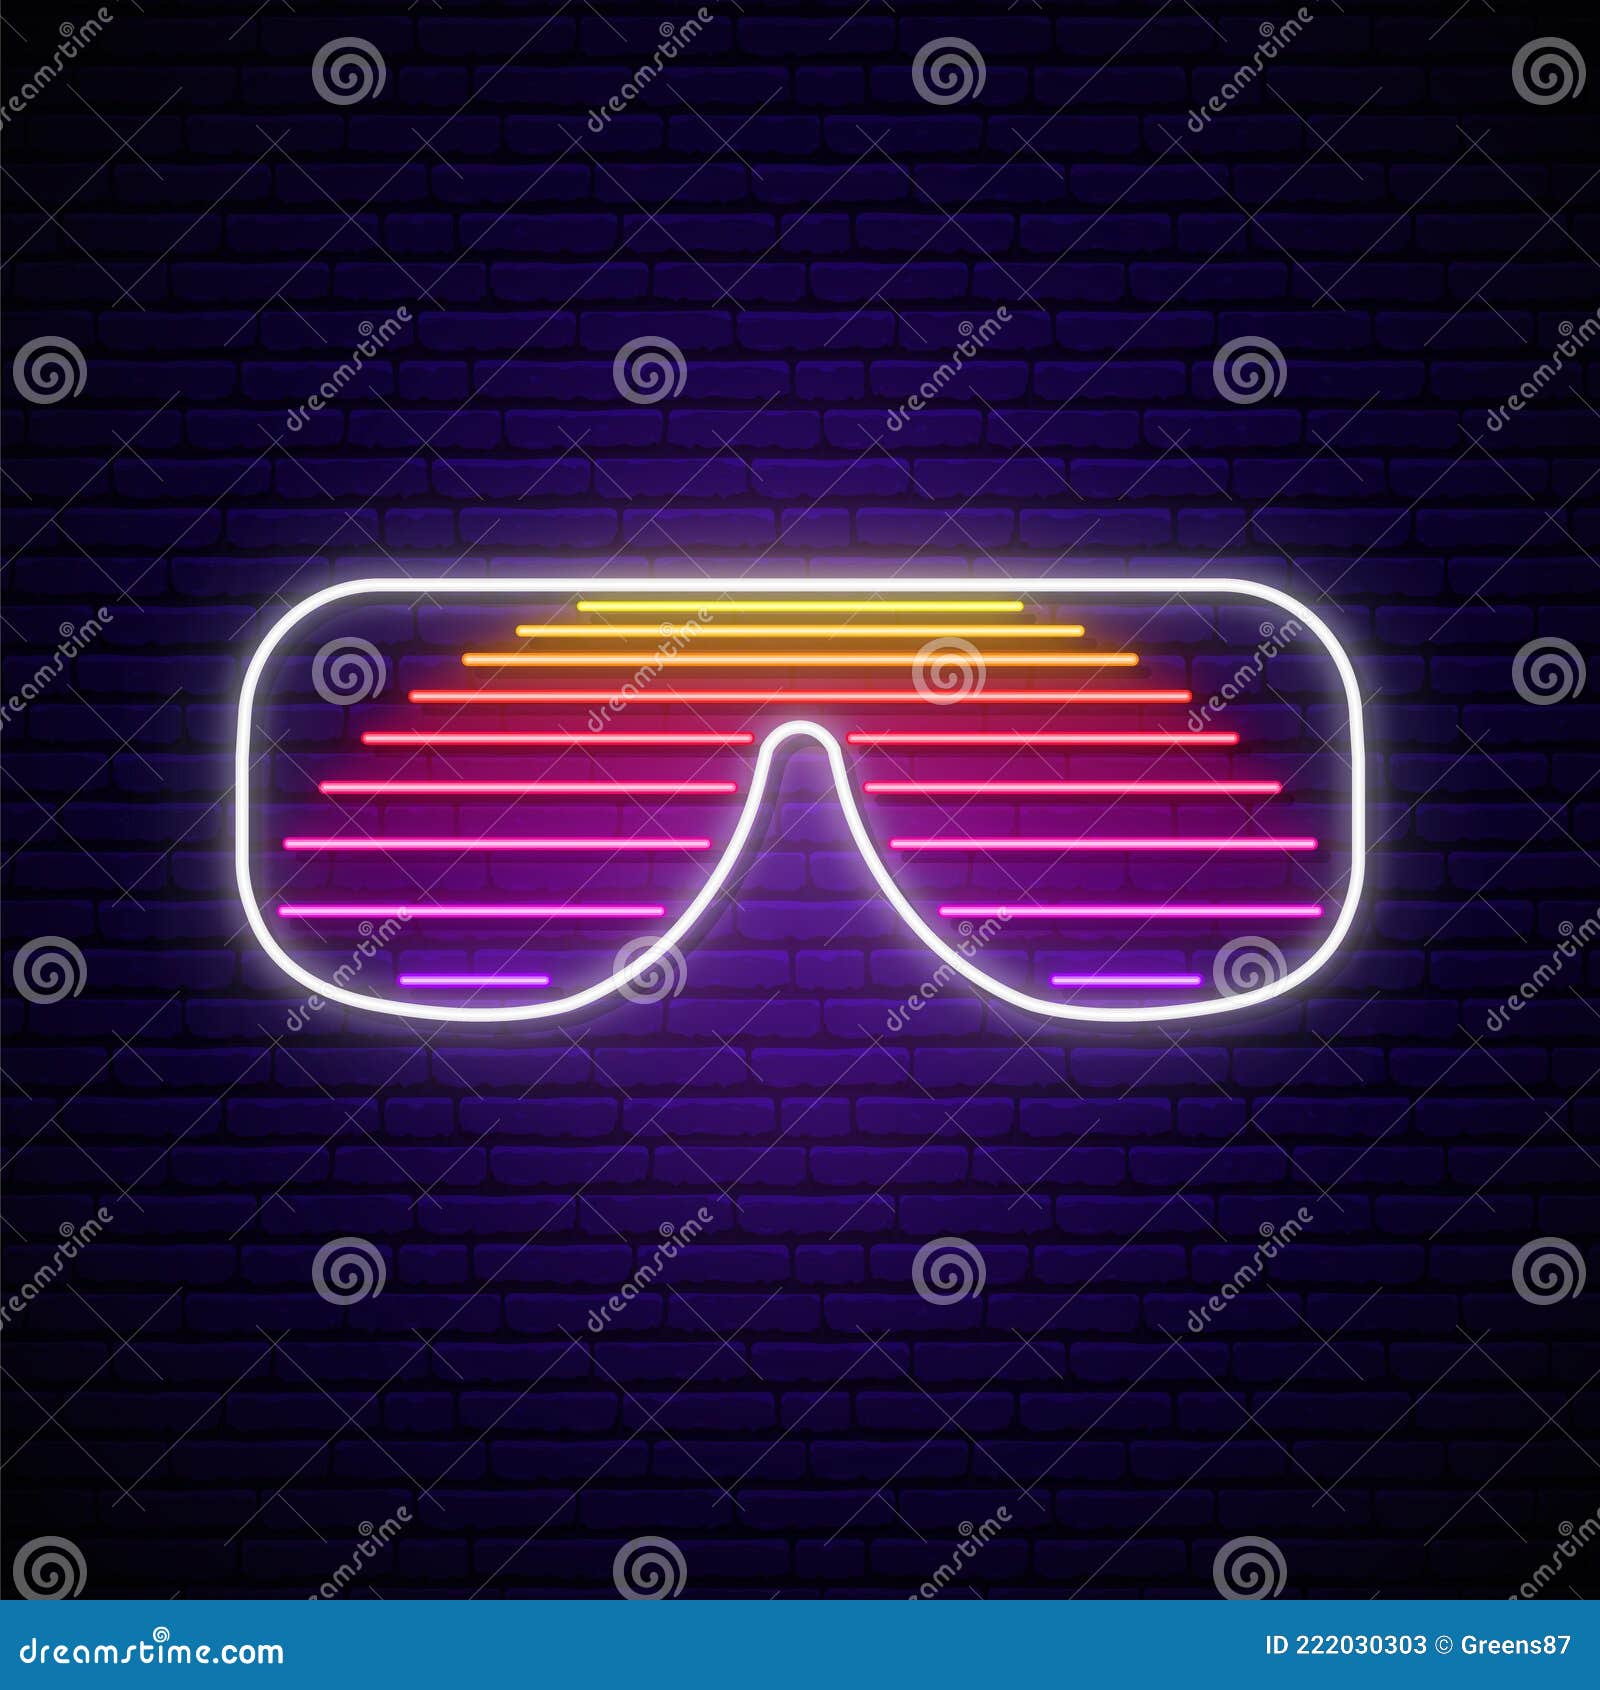 neon shutter glasses sign in retro 80s style.